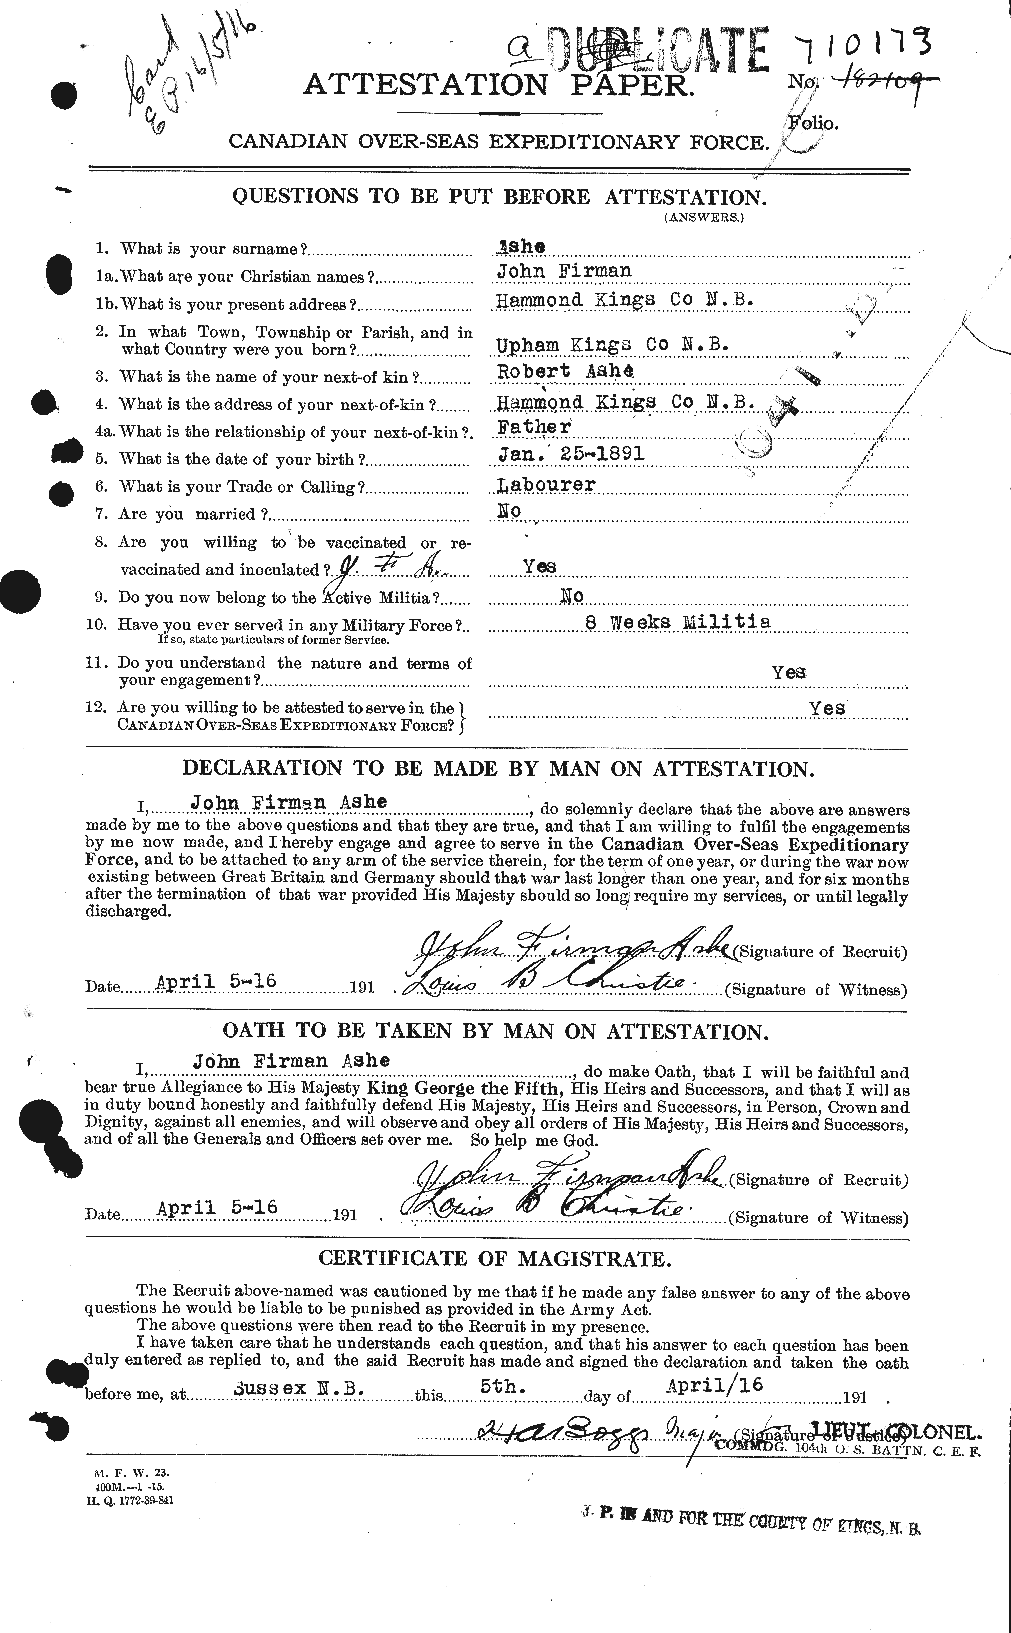 Dossiers du Personnel de la Première Guerre mondiale - CEC 223315a